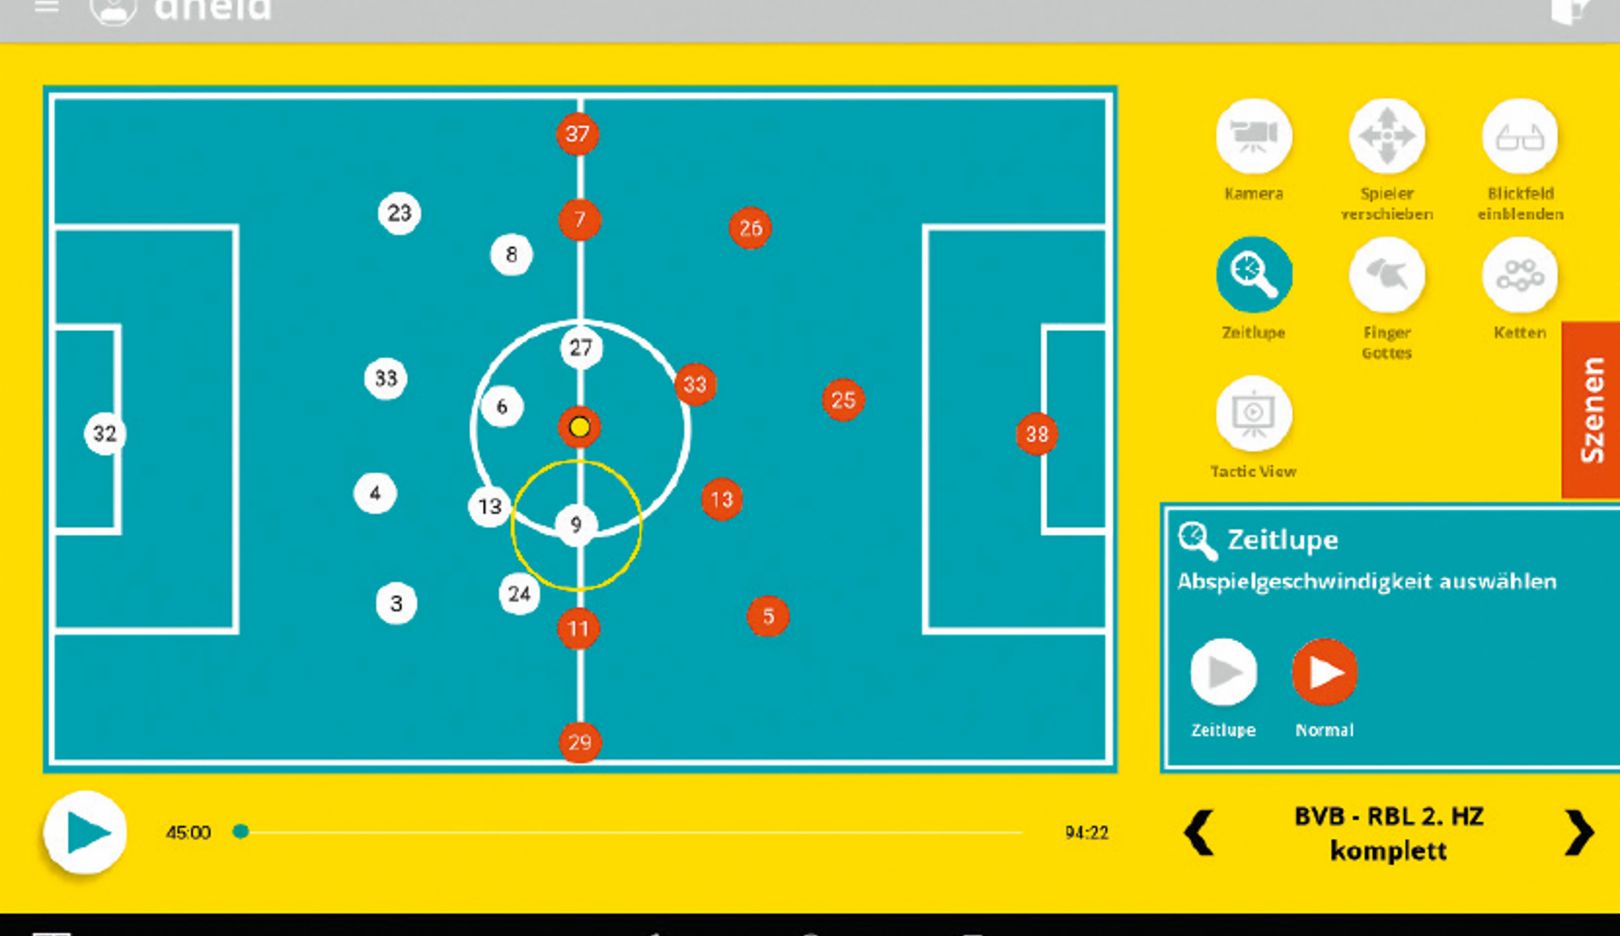 針對下一場對手進行準備： 可以在 Soccerbot360 裡模擬比賽戰術。 球員可以學習如何解決問題。